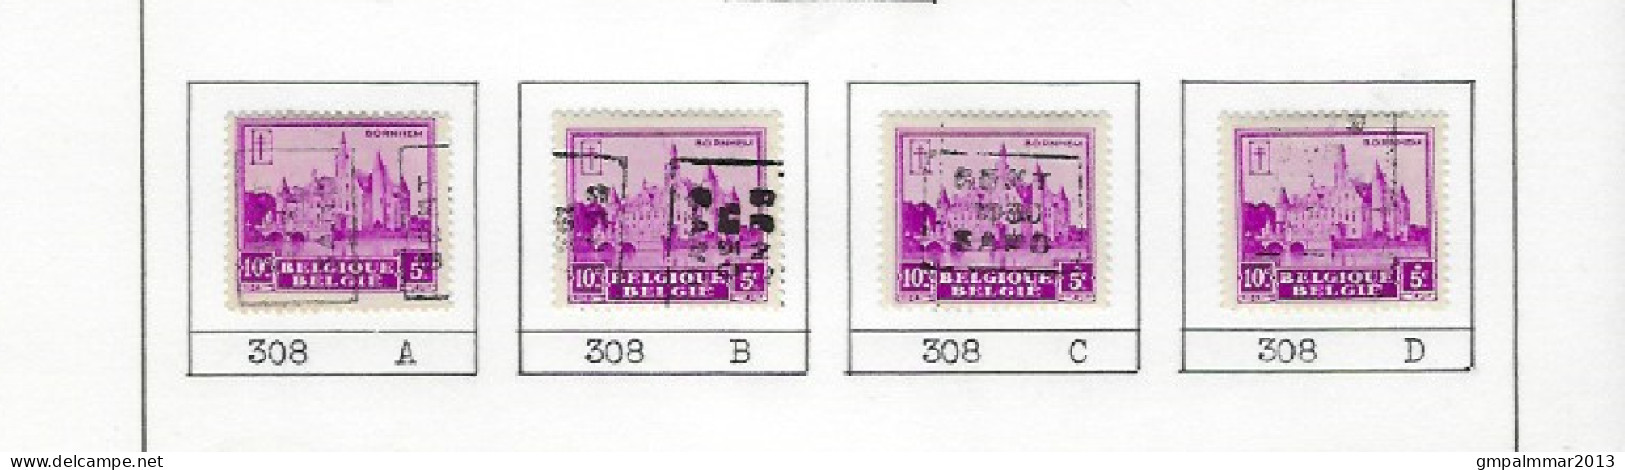 Zegel Nr. 308  voorafstempeling Nr. 5959 GENT 1930  GAND In De 4 Posities , A  B  C  en D ; Staat Zie Scan ! - Rolstempels 1930-..